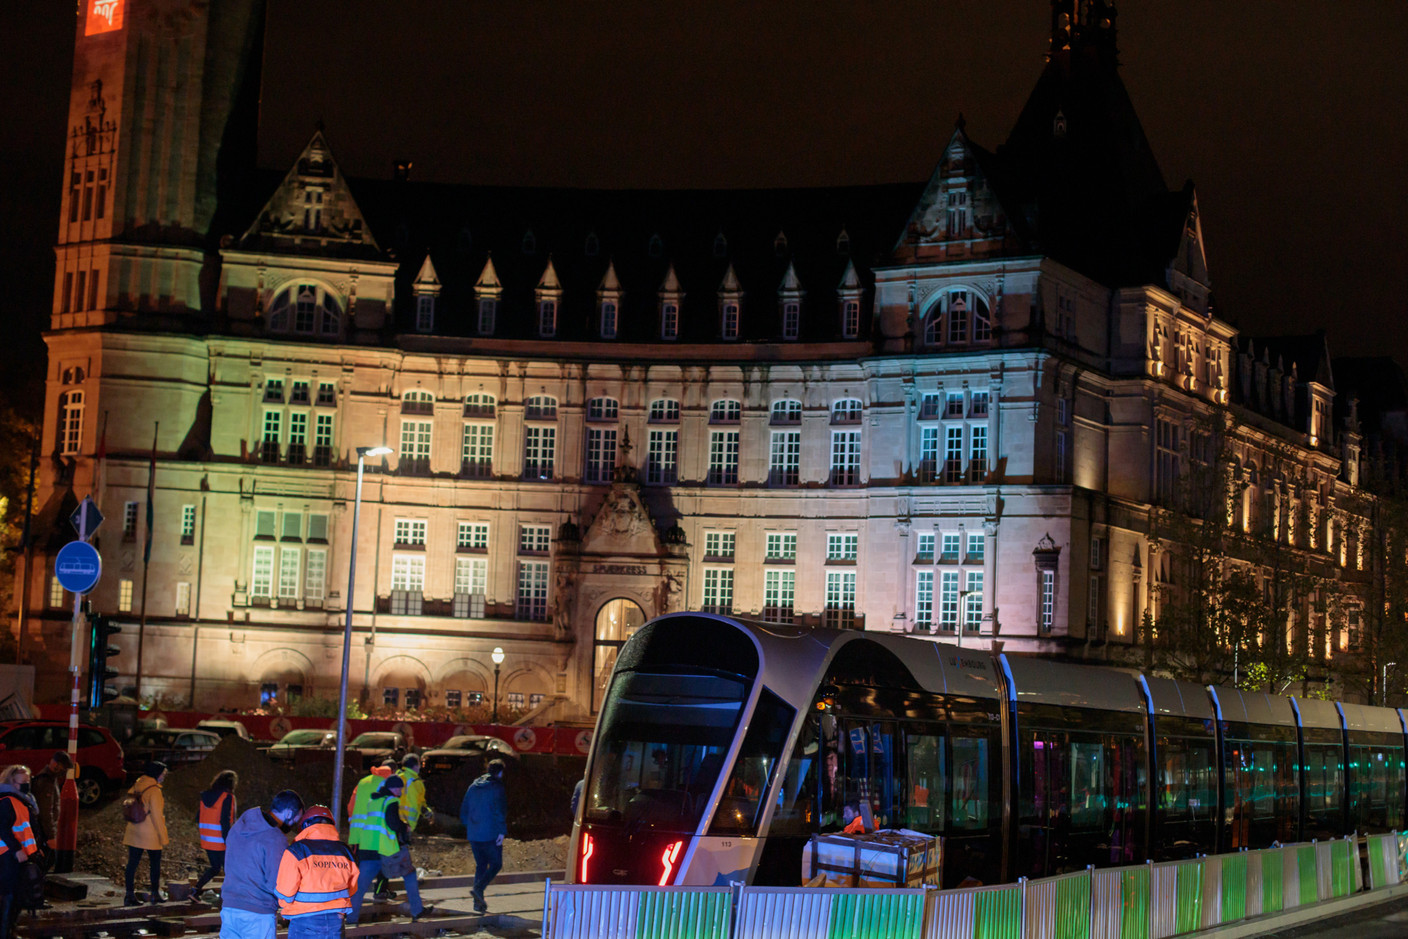 Le tram a fait son entrée sur l’avenue de la Liberté avant d’y être immobilisé. (Photo: Matic Zorman / Maison Moderne)